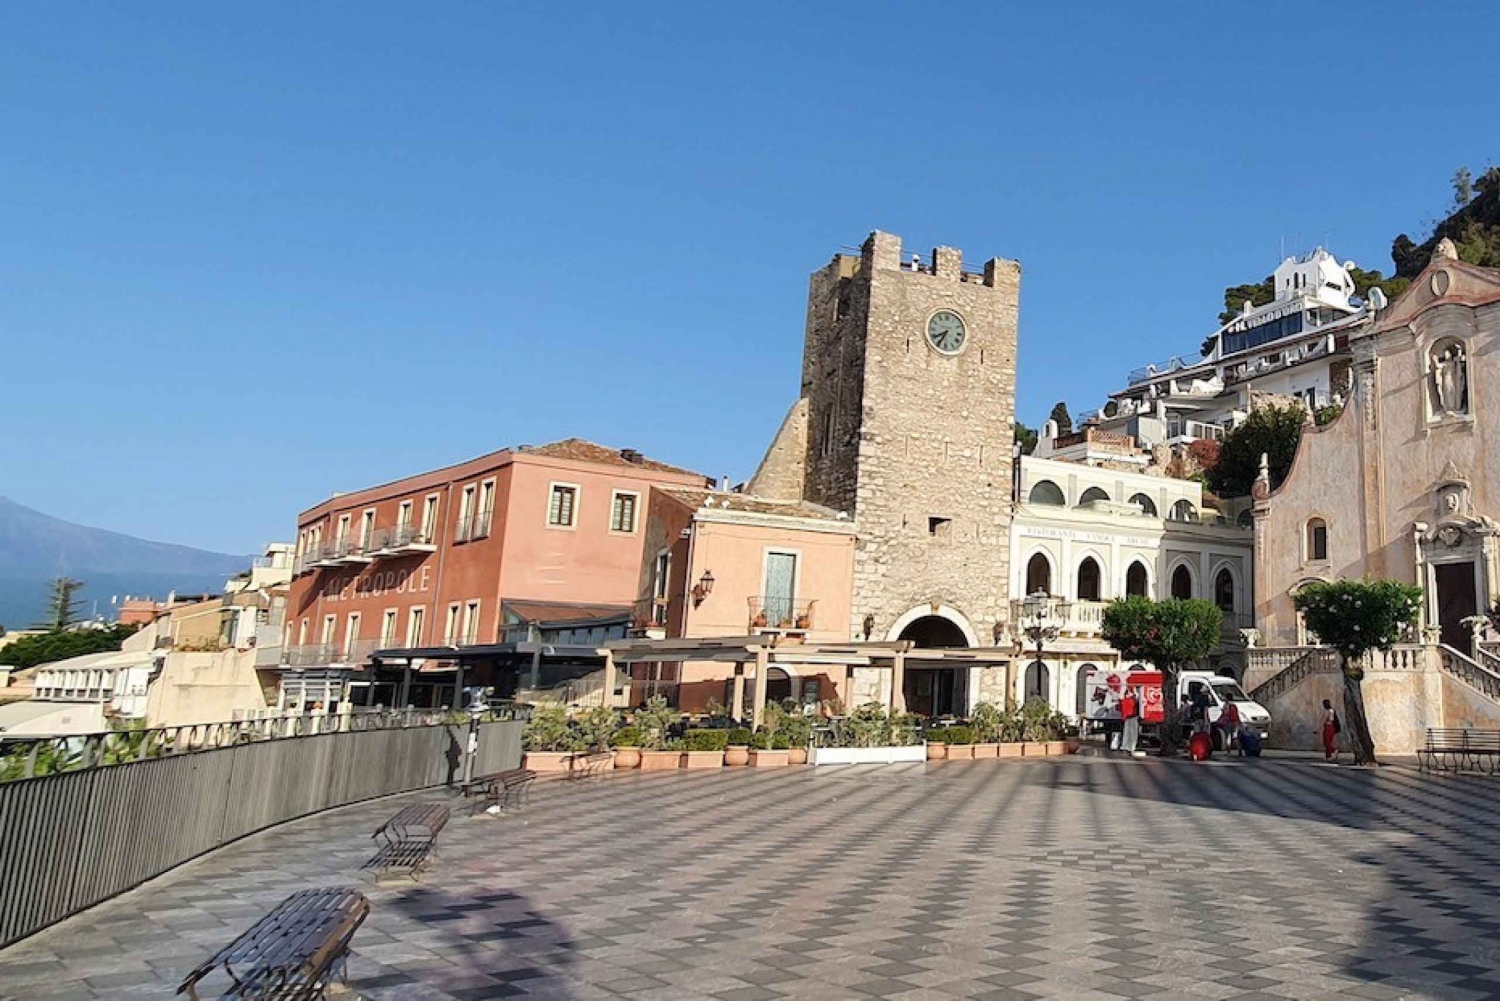 Taormina: Zwiedzanie z audioprzewodnikiem na smartfonie